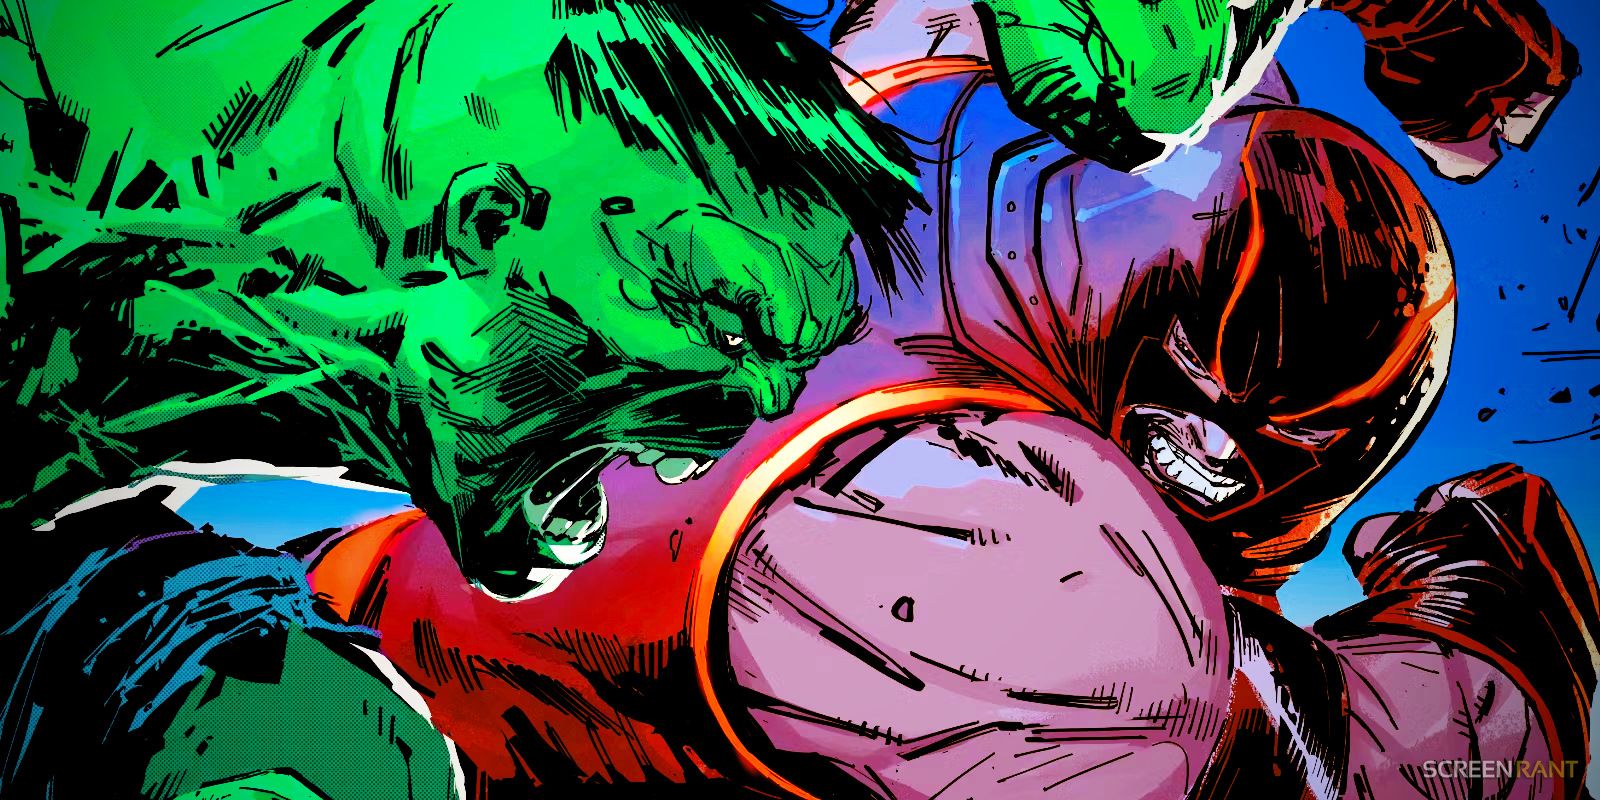 juggernaut beat hulk